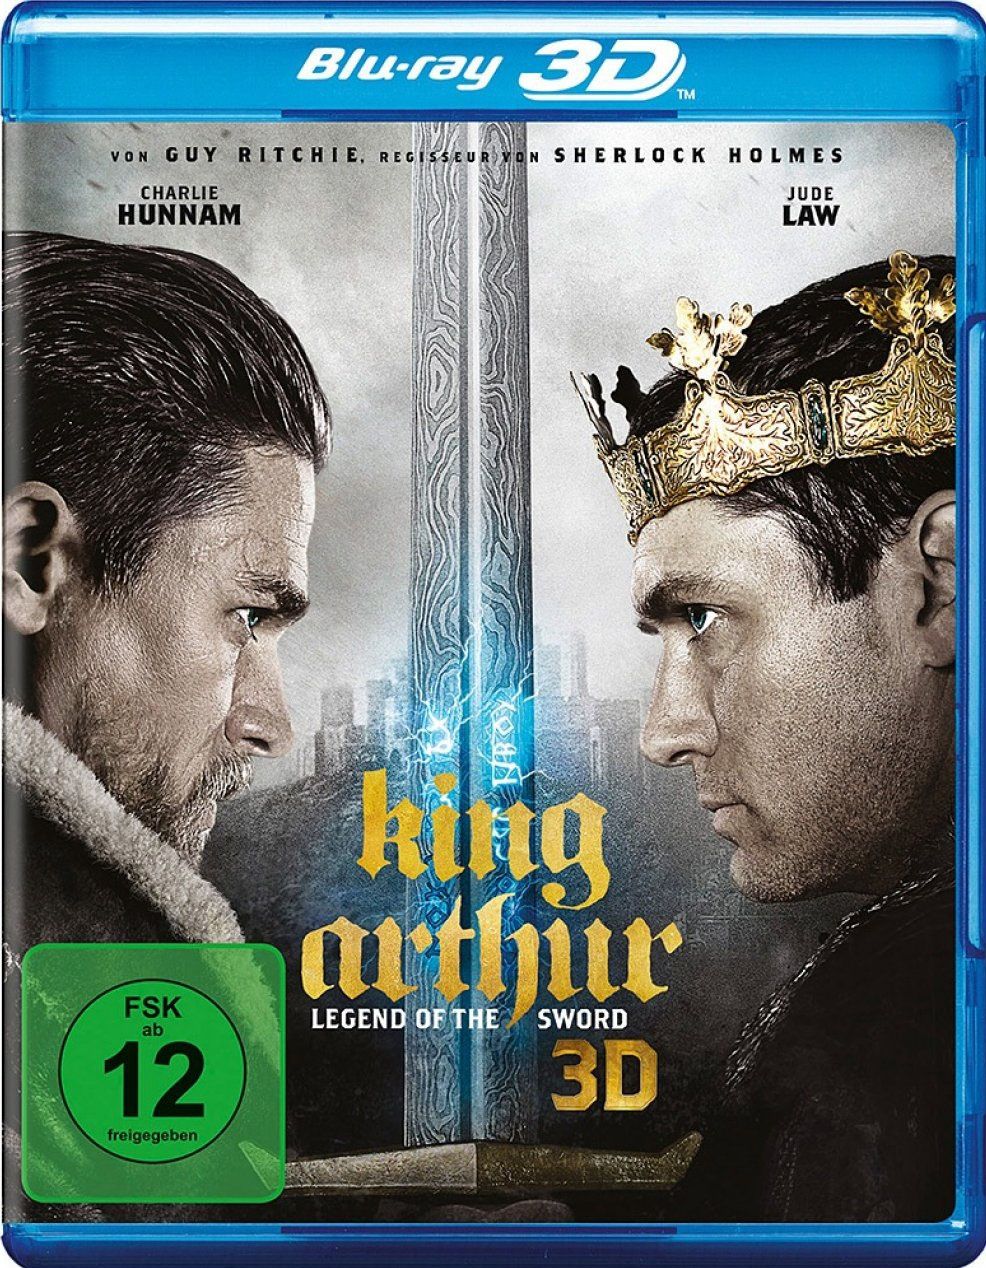 King Arthur - Legend of the Sword 3D (BLURAY 3D)